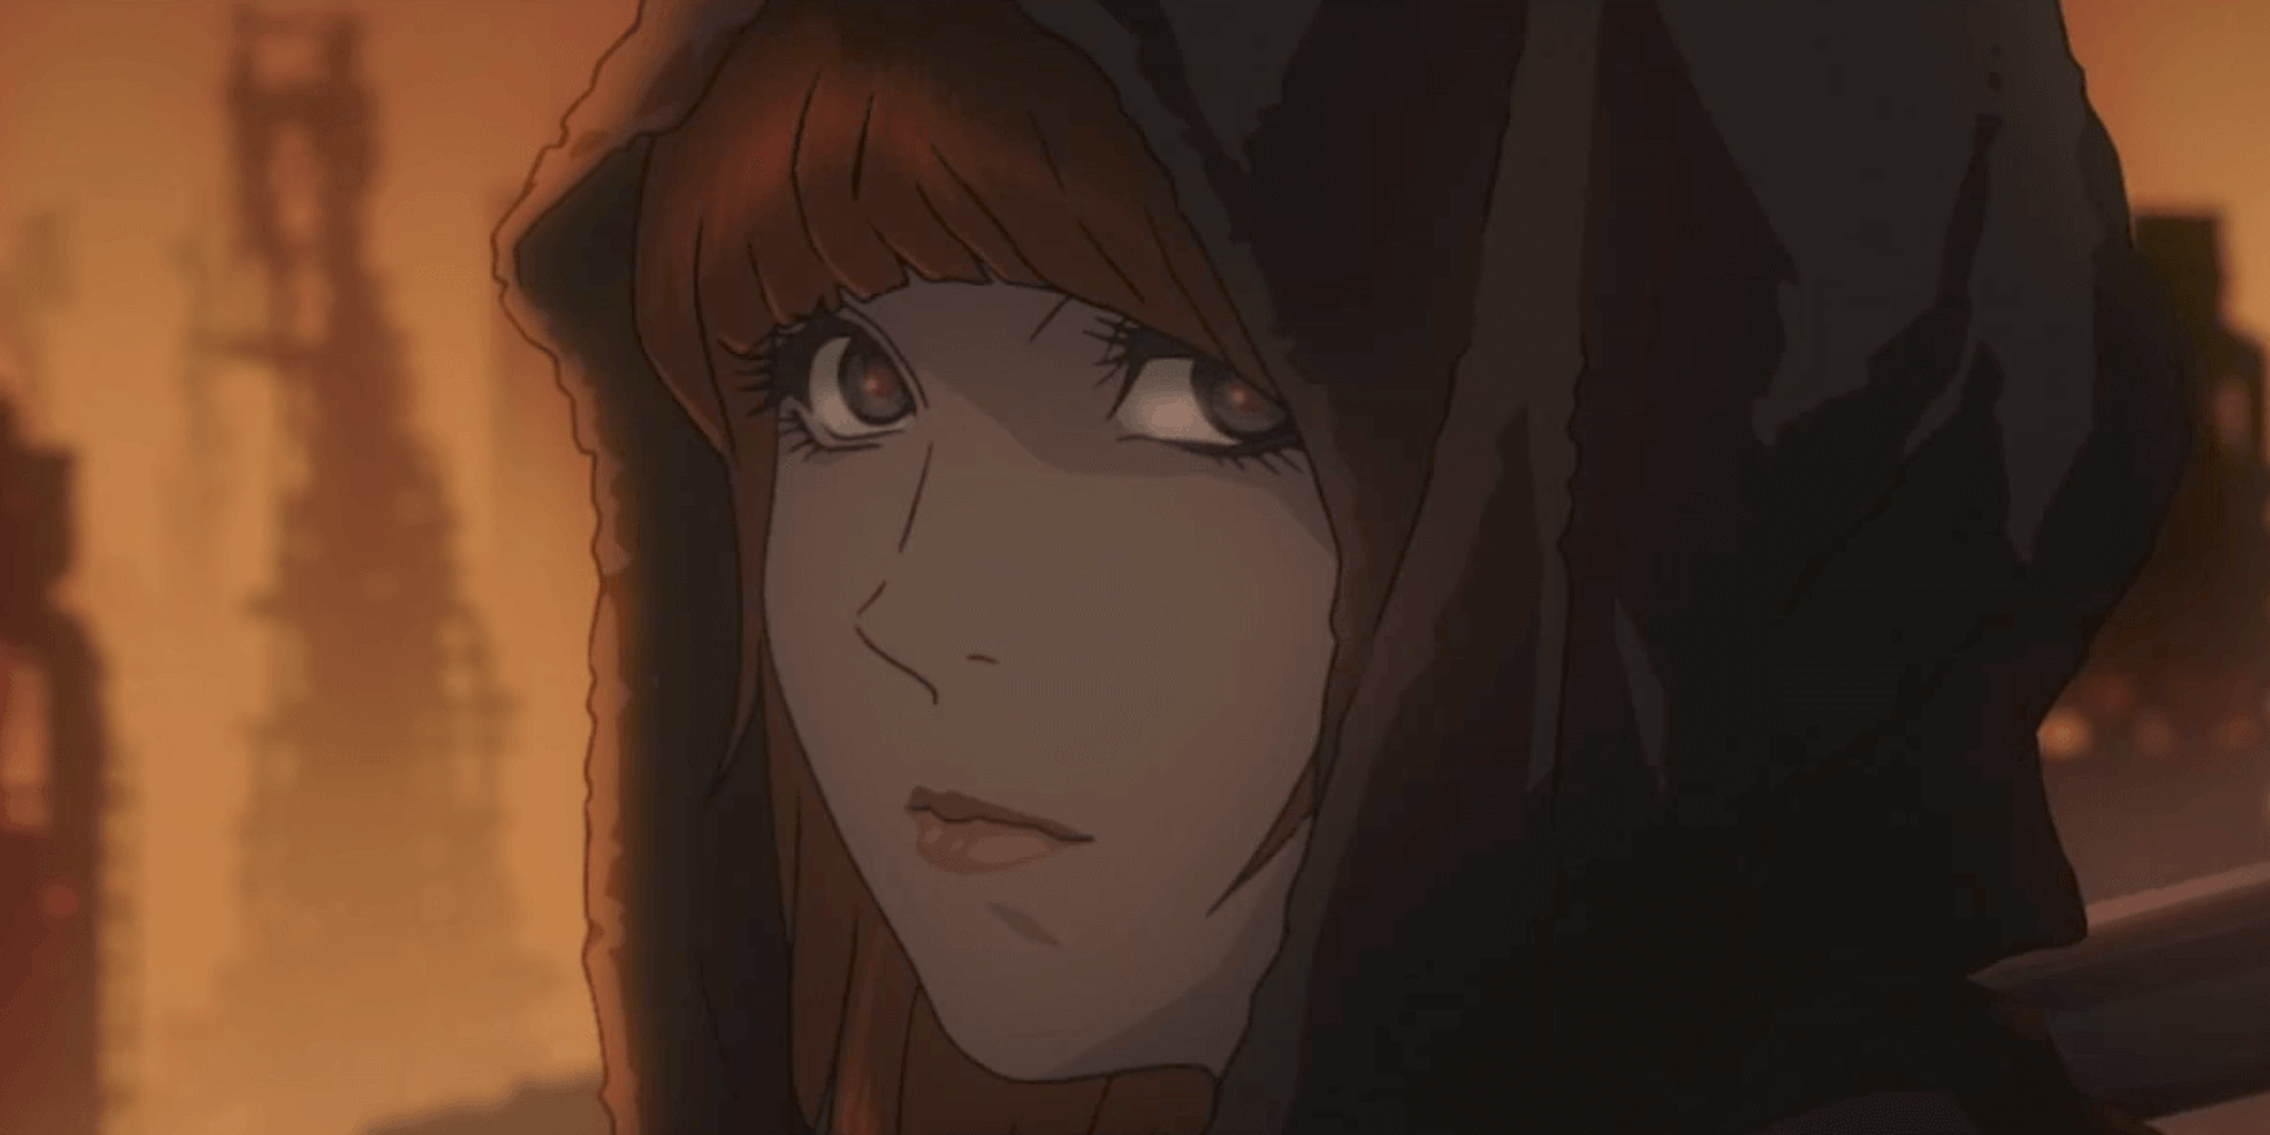 Crunchyroll Will Release a 'Blade Runner' Anime Sequel Next Week